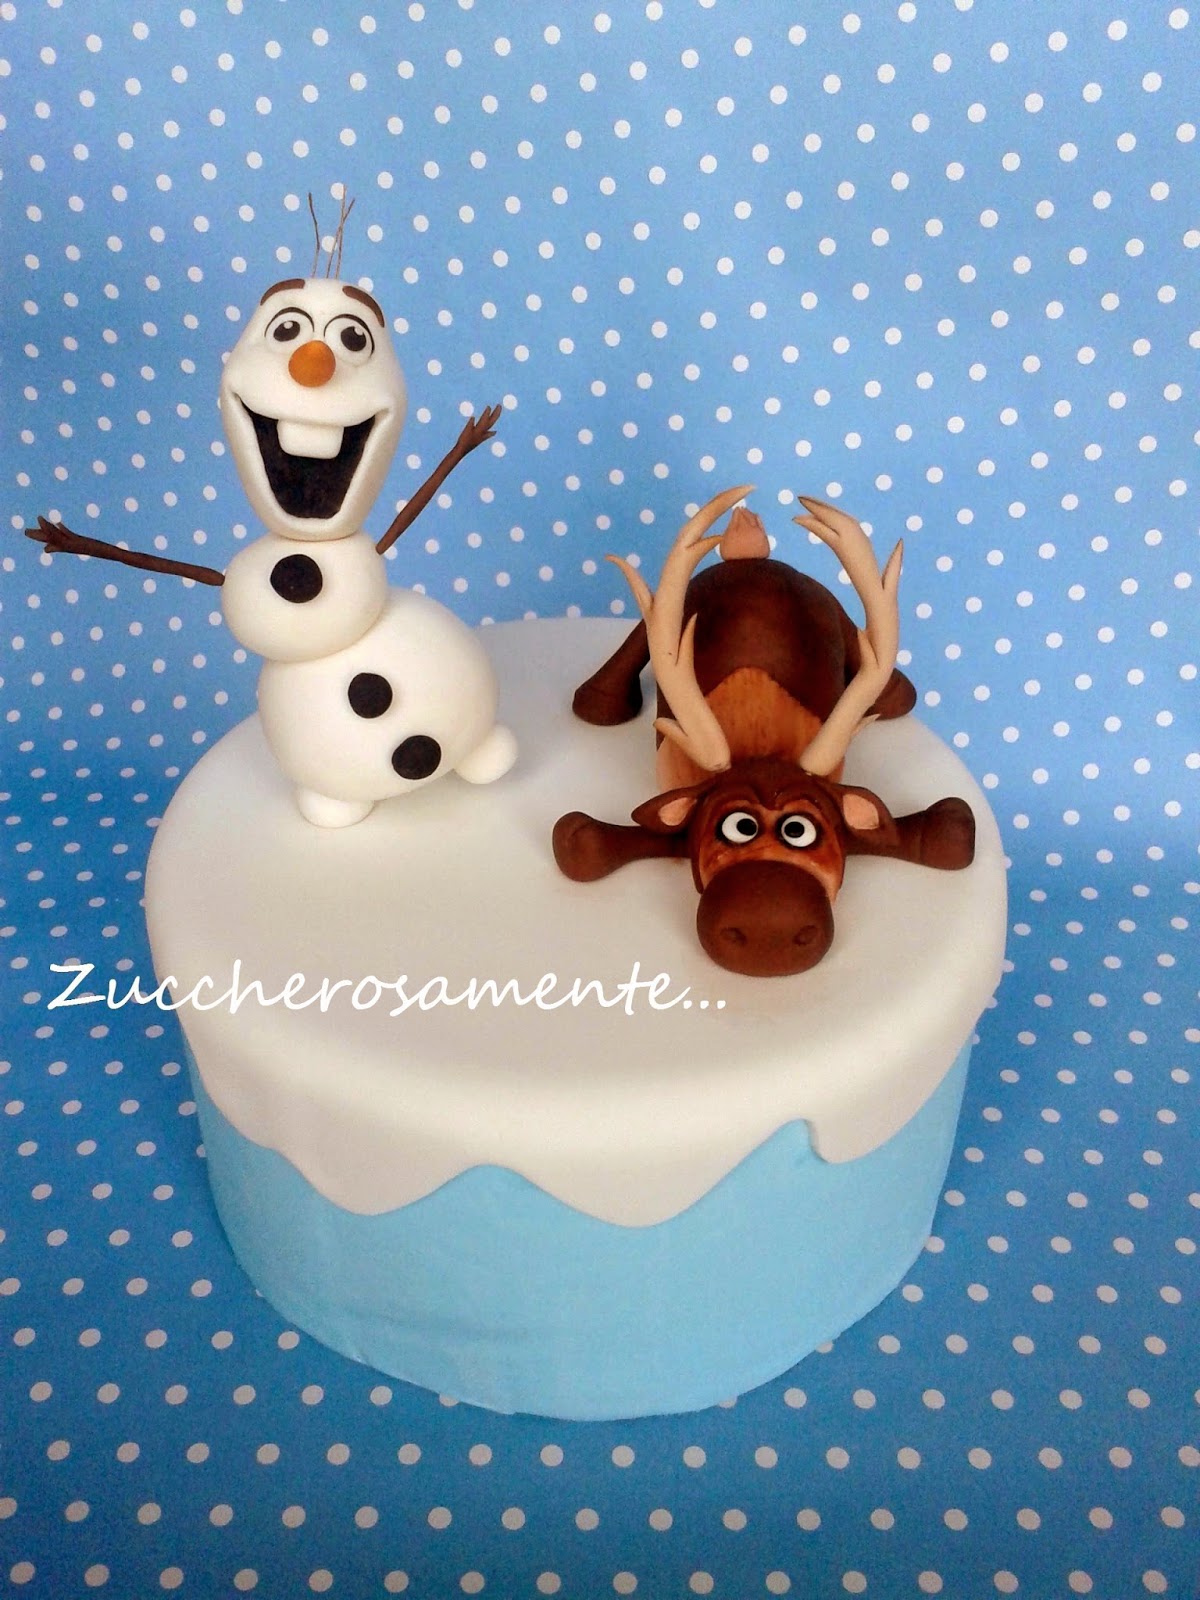 Zuccherosamente: Olaf e Sven direttamente da Frozen.in pasta di  zucchero!